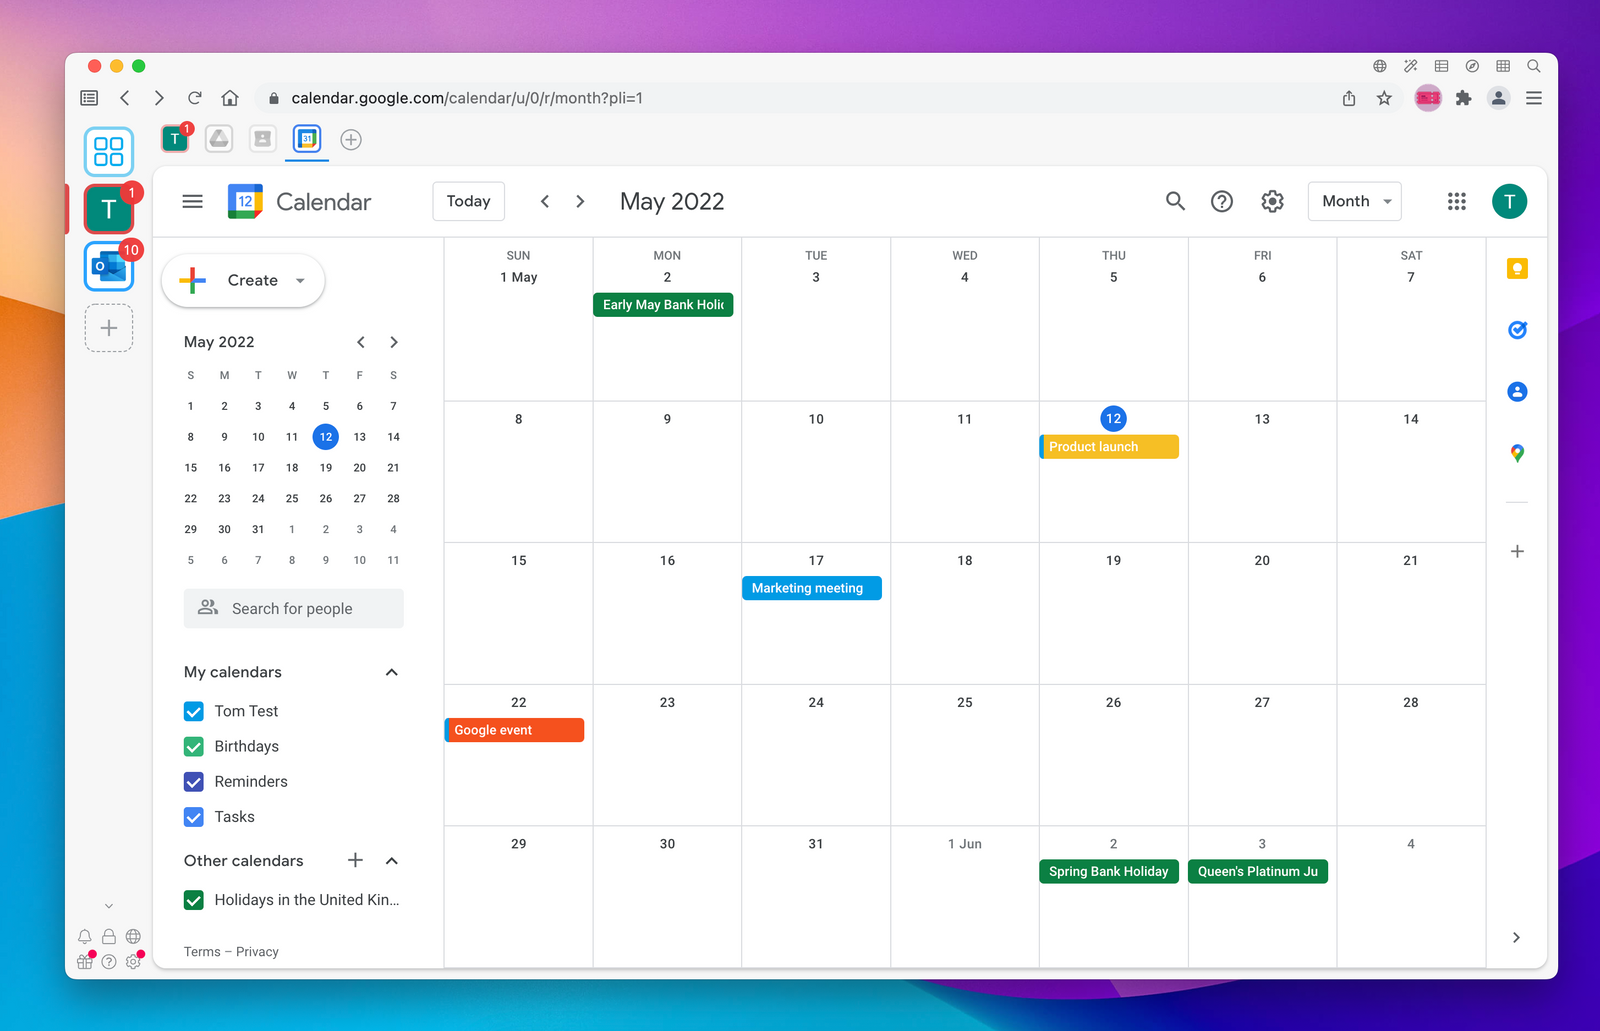 How to Get a Google Calendar App for Desktop (Mac or PC)